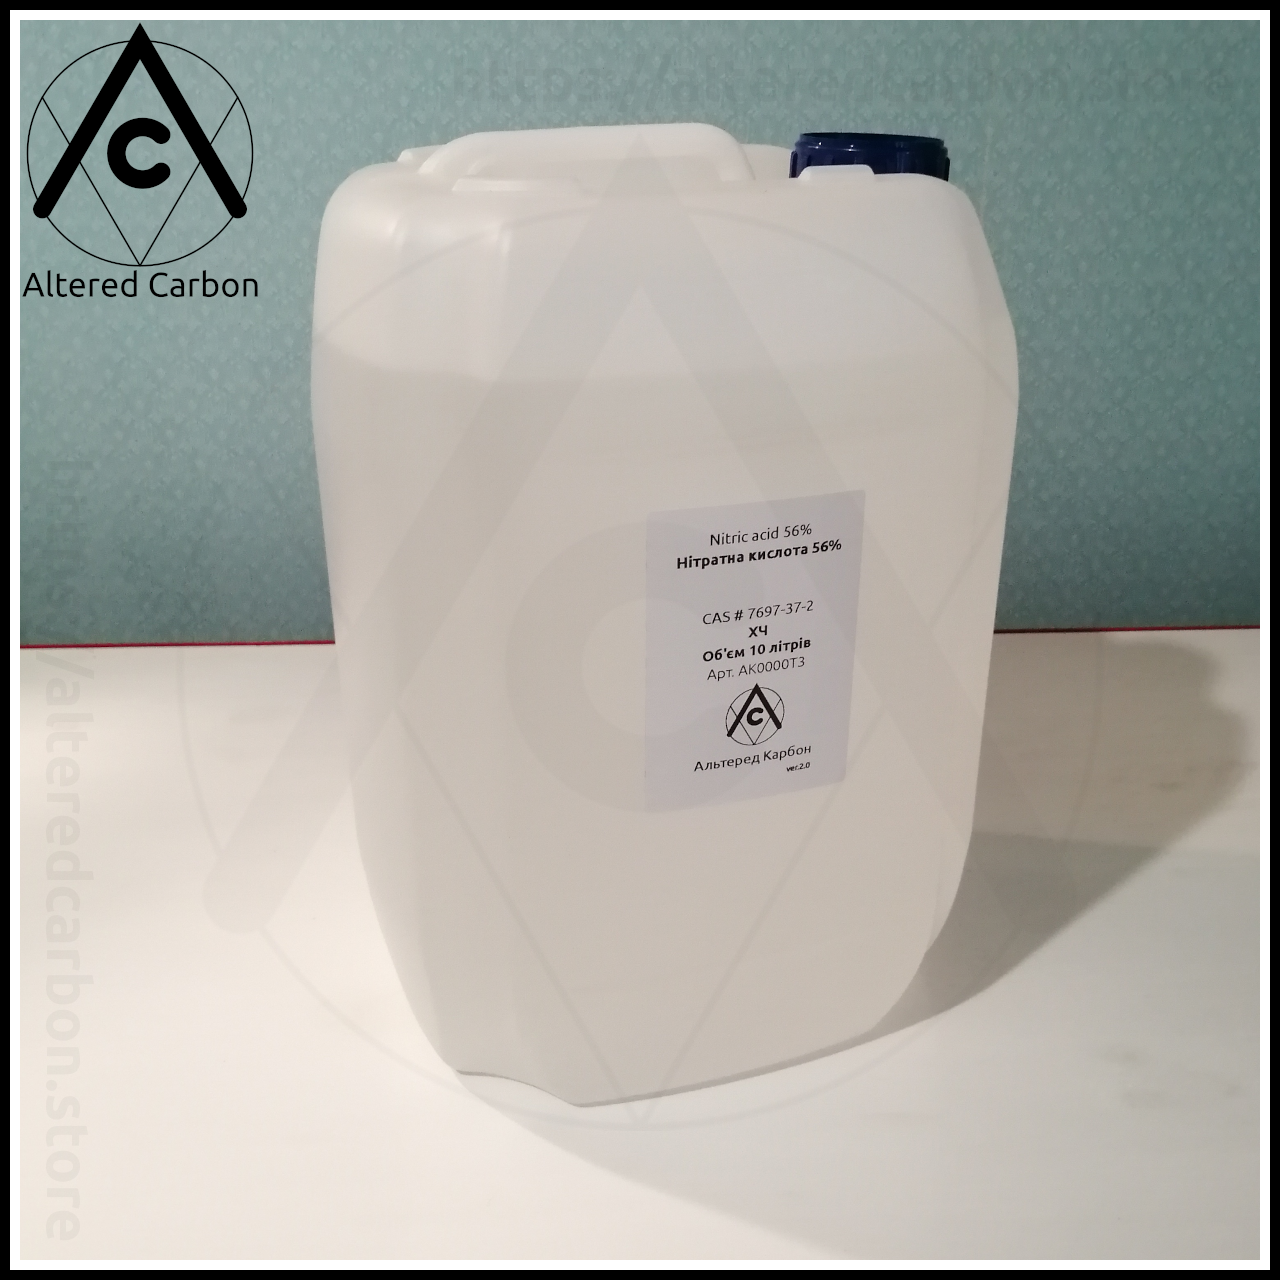 

Азотная кислота, нитратная кислота ( Ч, 56% ) фасовка 10 литр